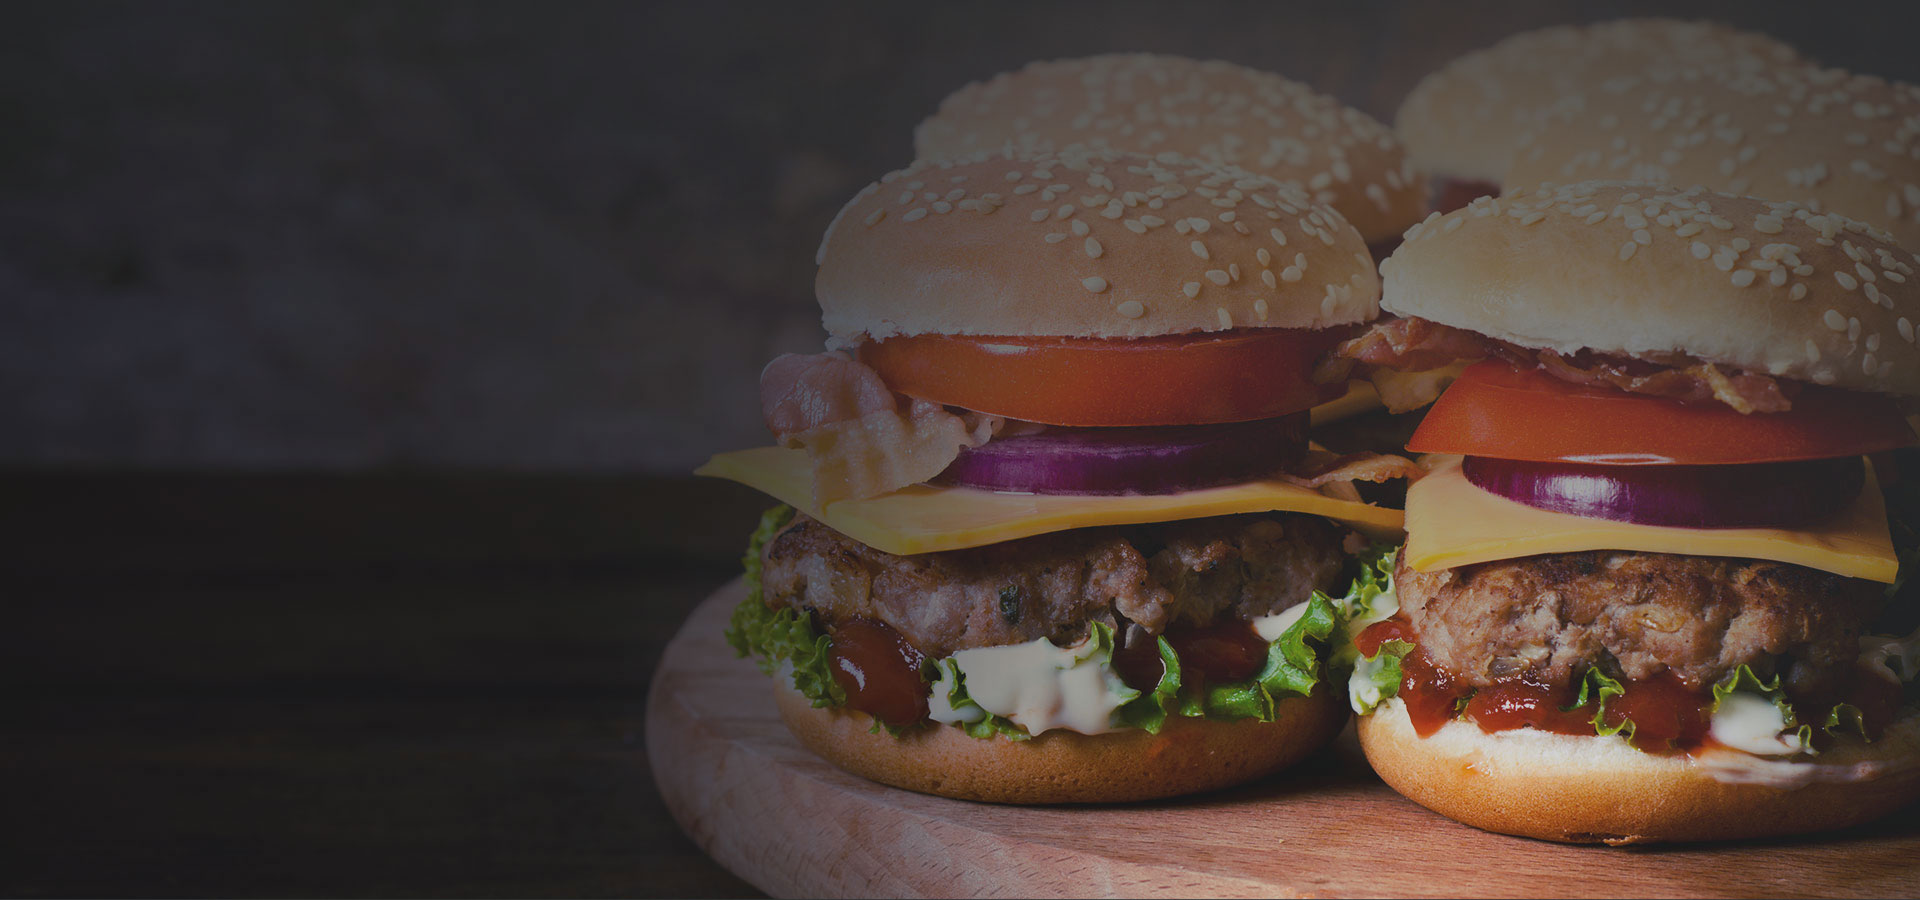 Client Boulevard Burgers & Tap House Unveils “The Touchdown Burger”